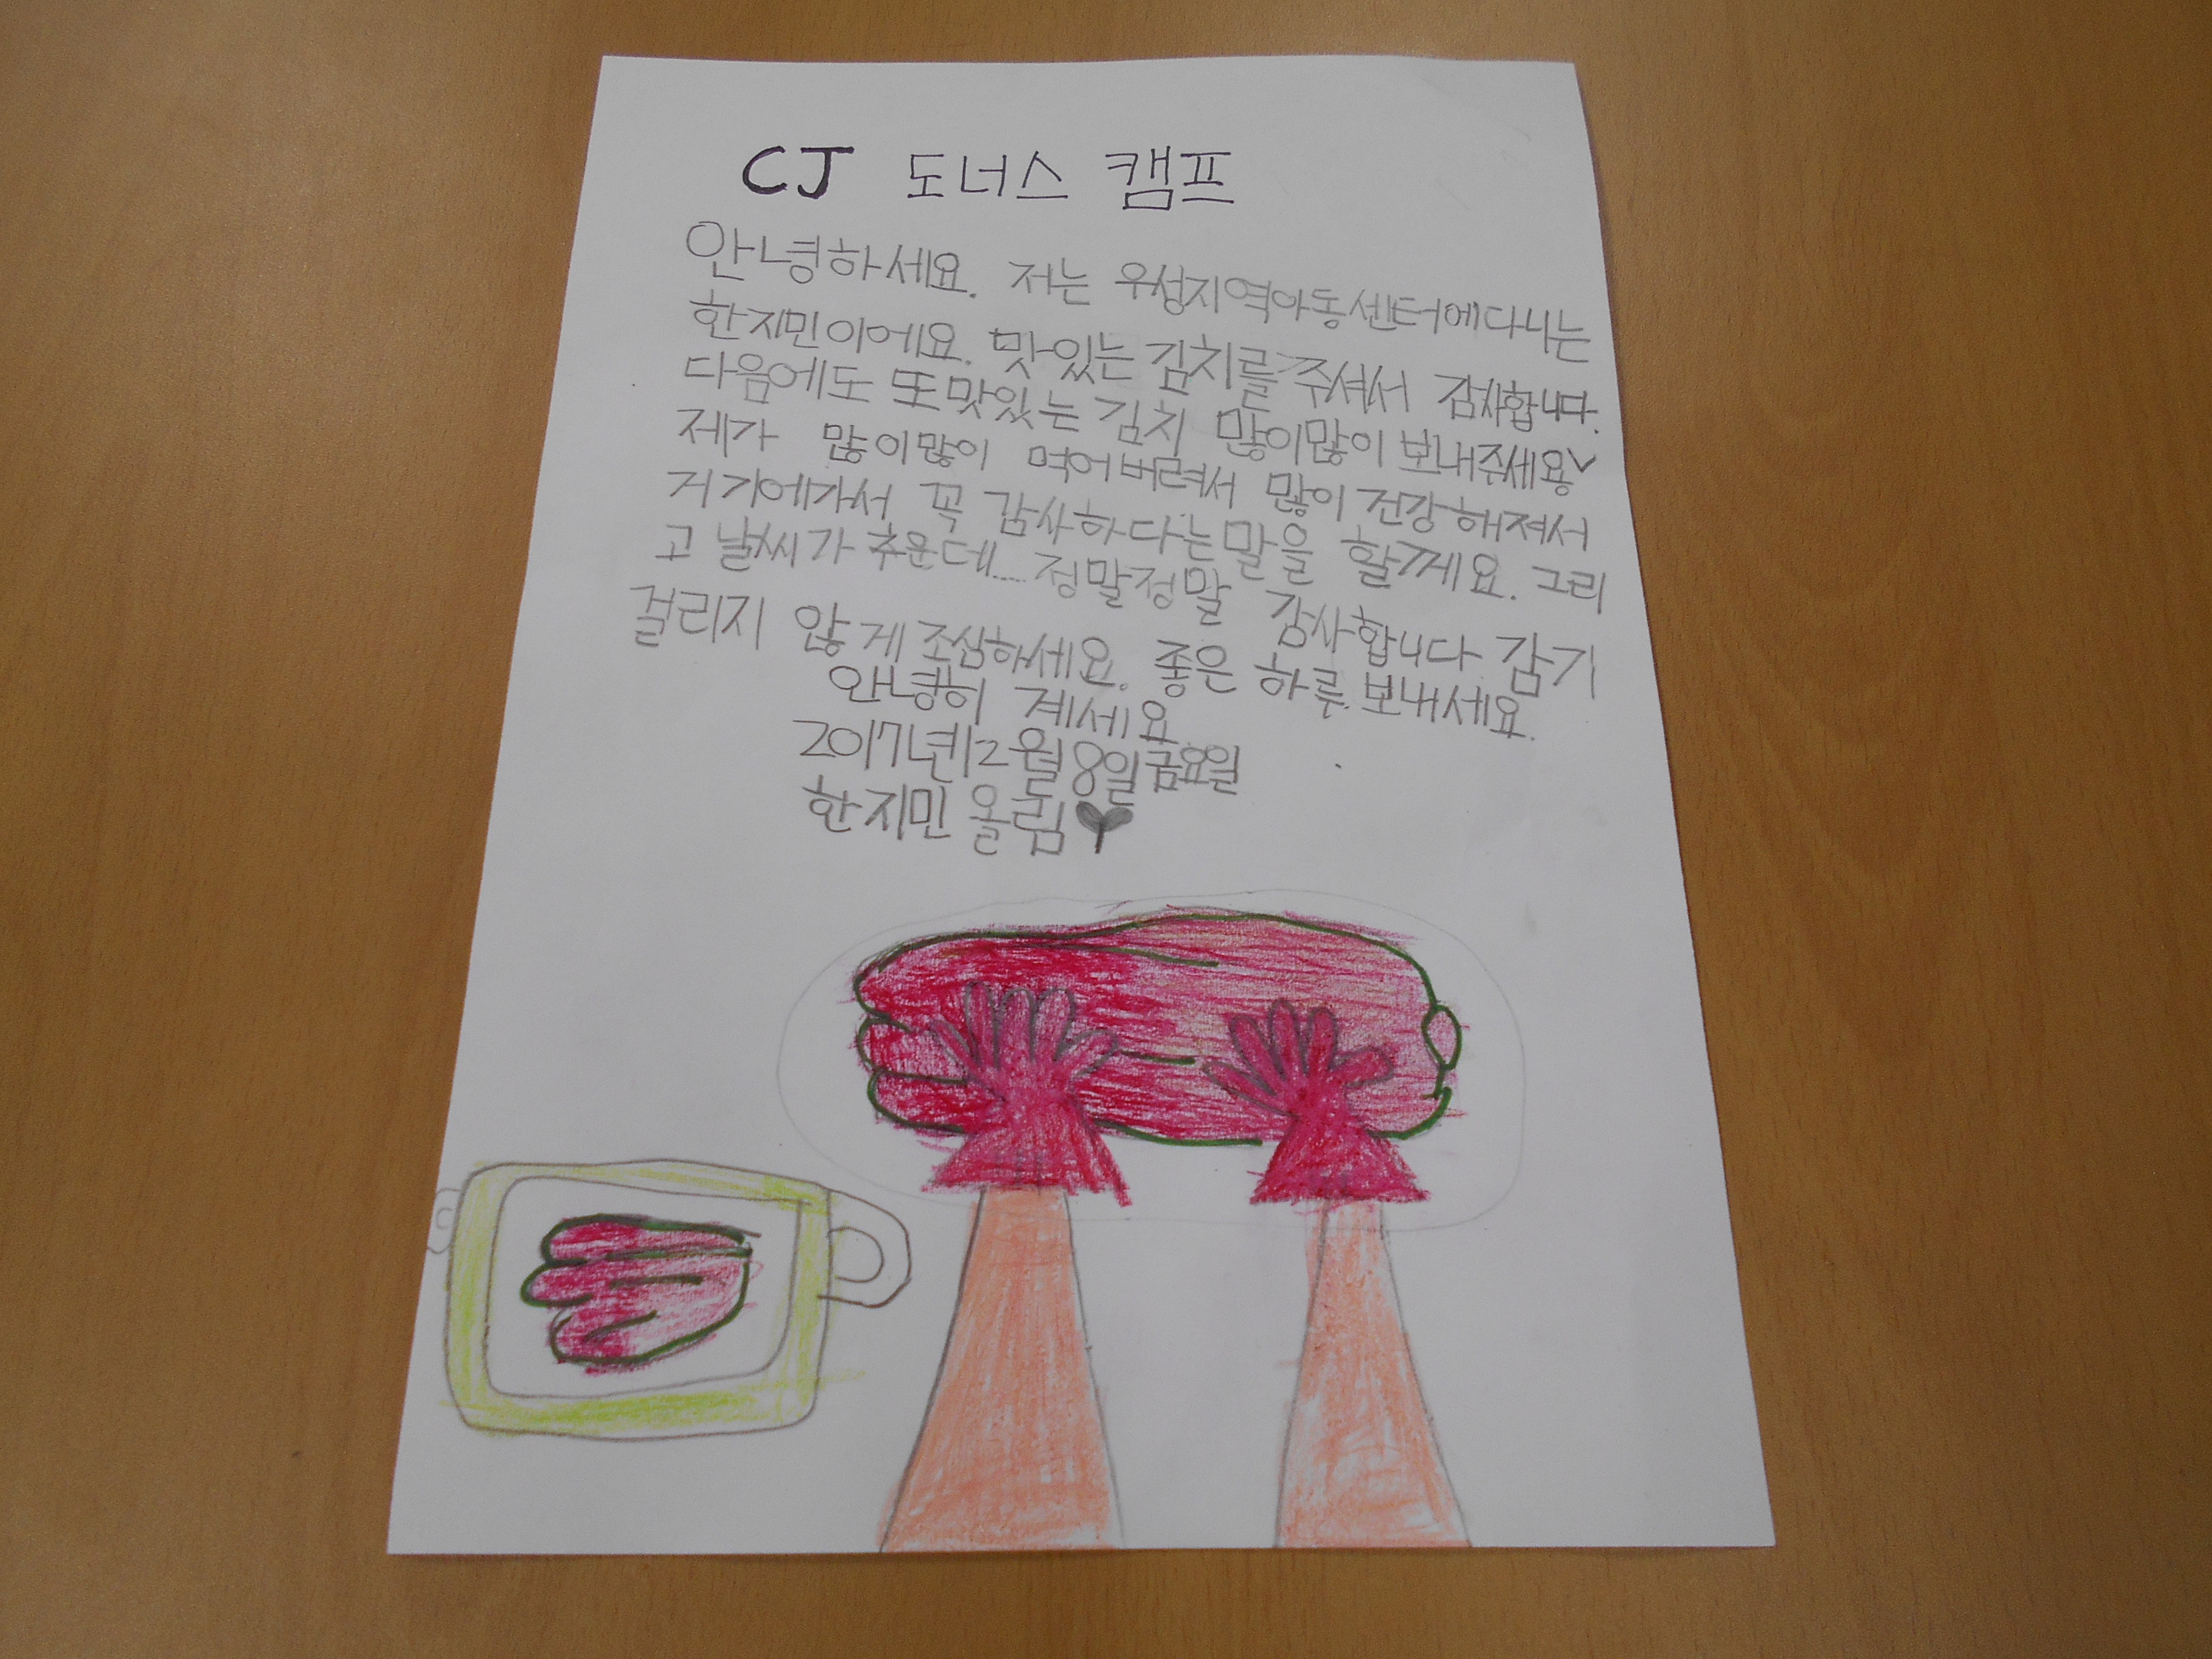 한식요리를 좋아하는 지민이의 김치사랑 감사편지입니다. 